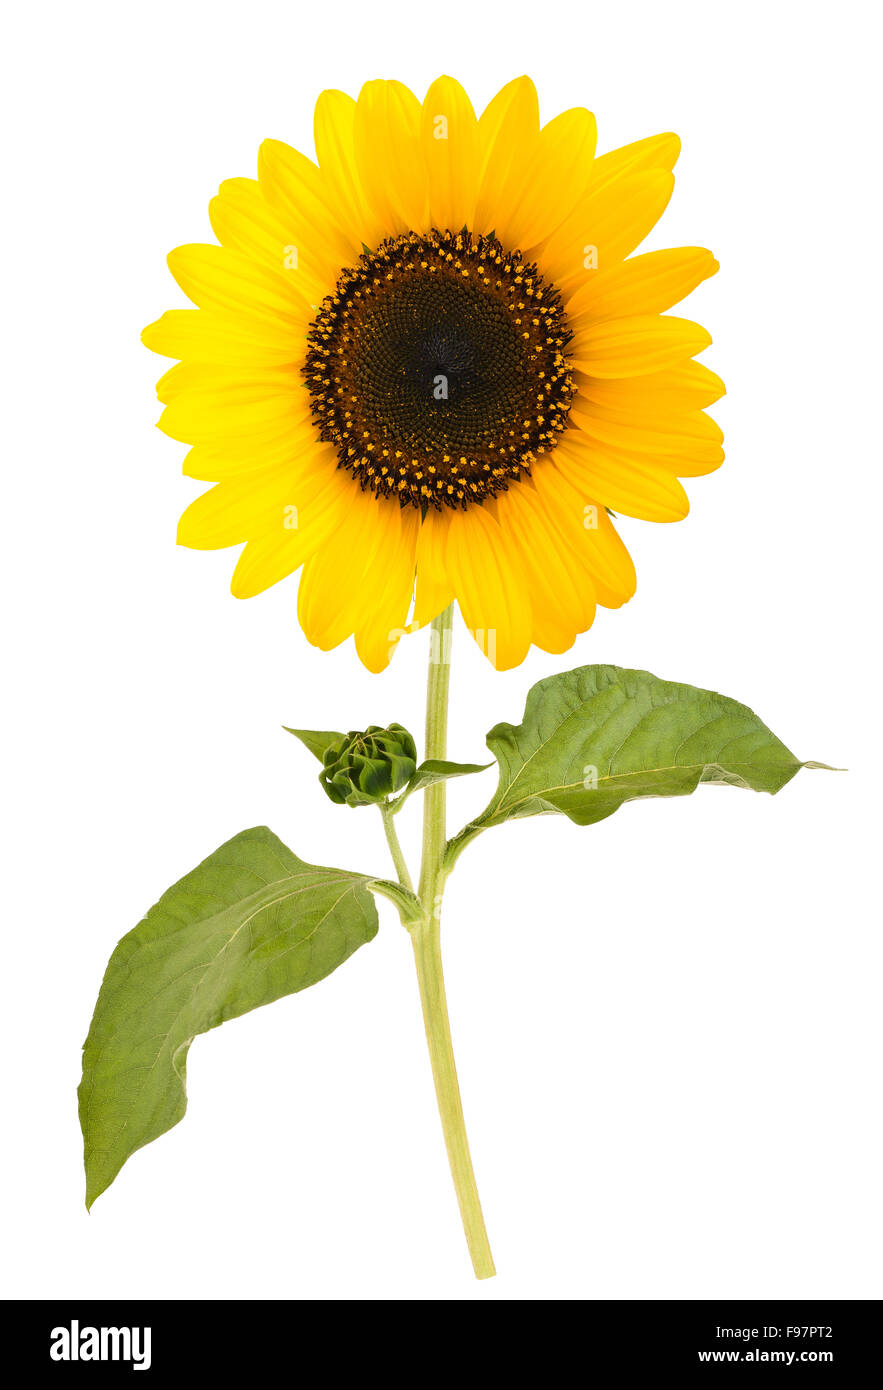 sunflower isolated on white background Stock Photo